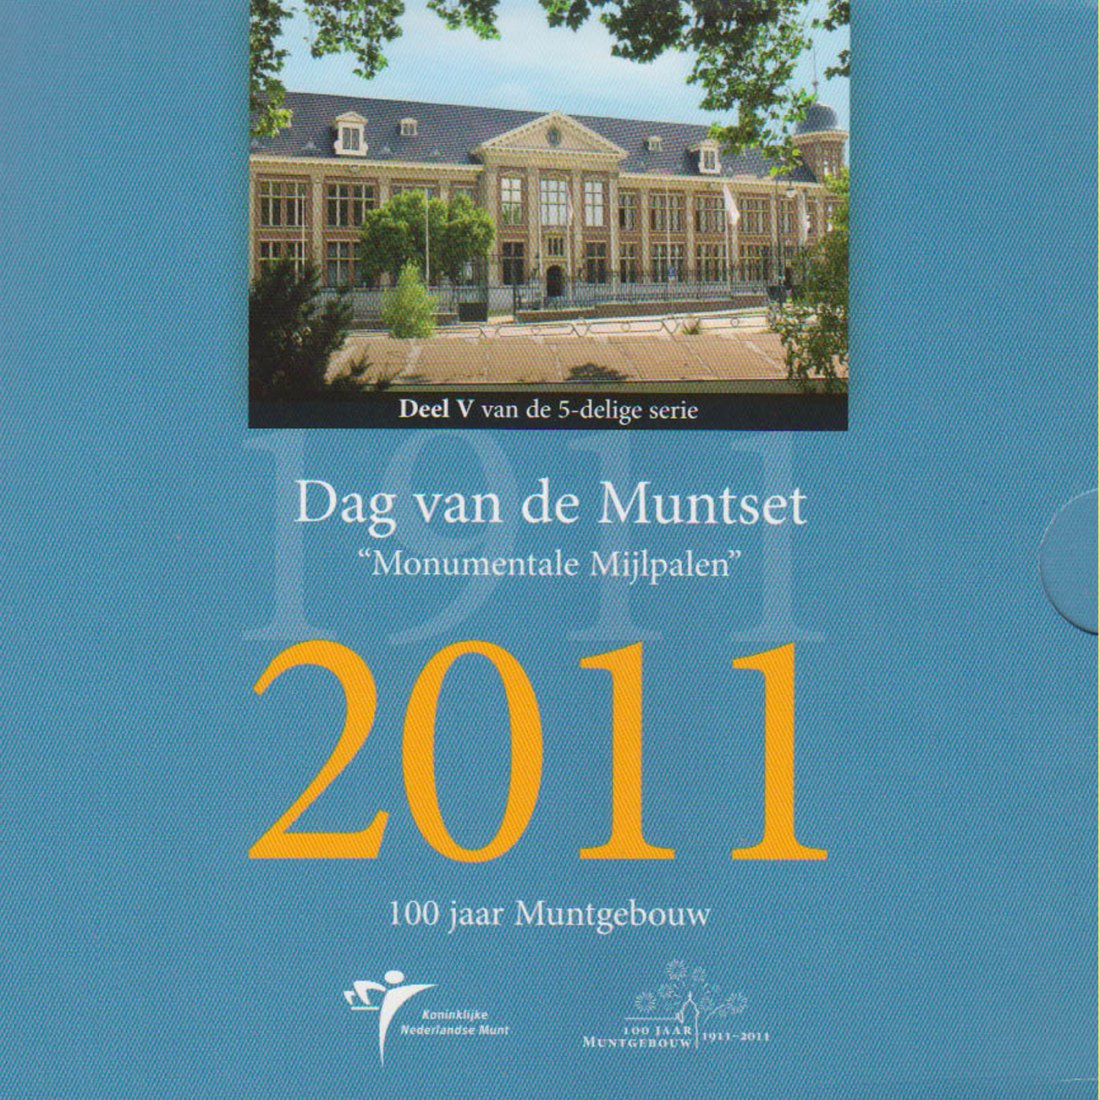  Offiz. Sonder-KMS Niederlande *Dag van de Muntset* 2011 mit Silbermed. nur 2.011 Stück!   